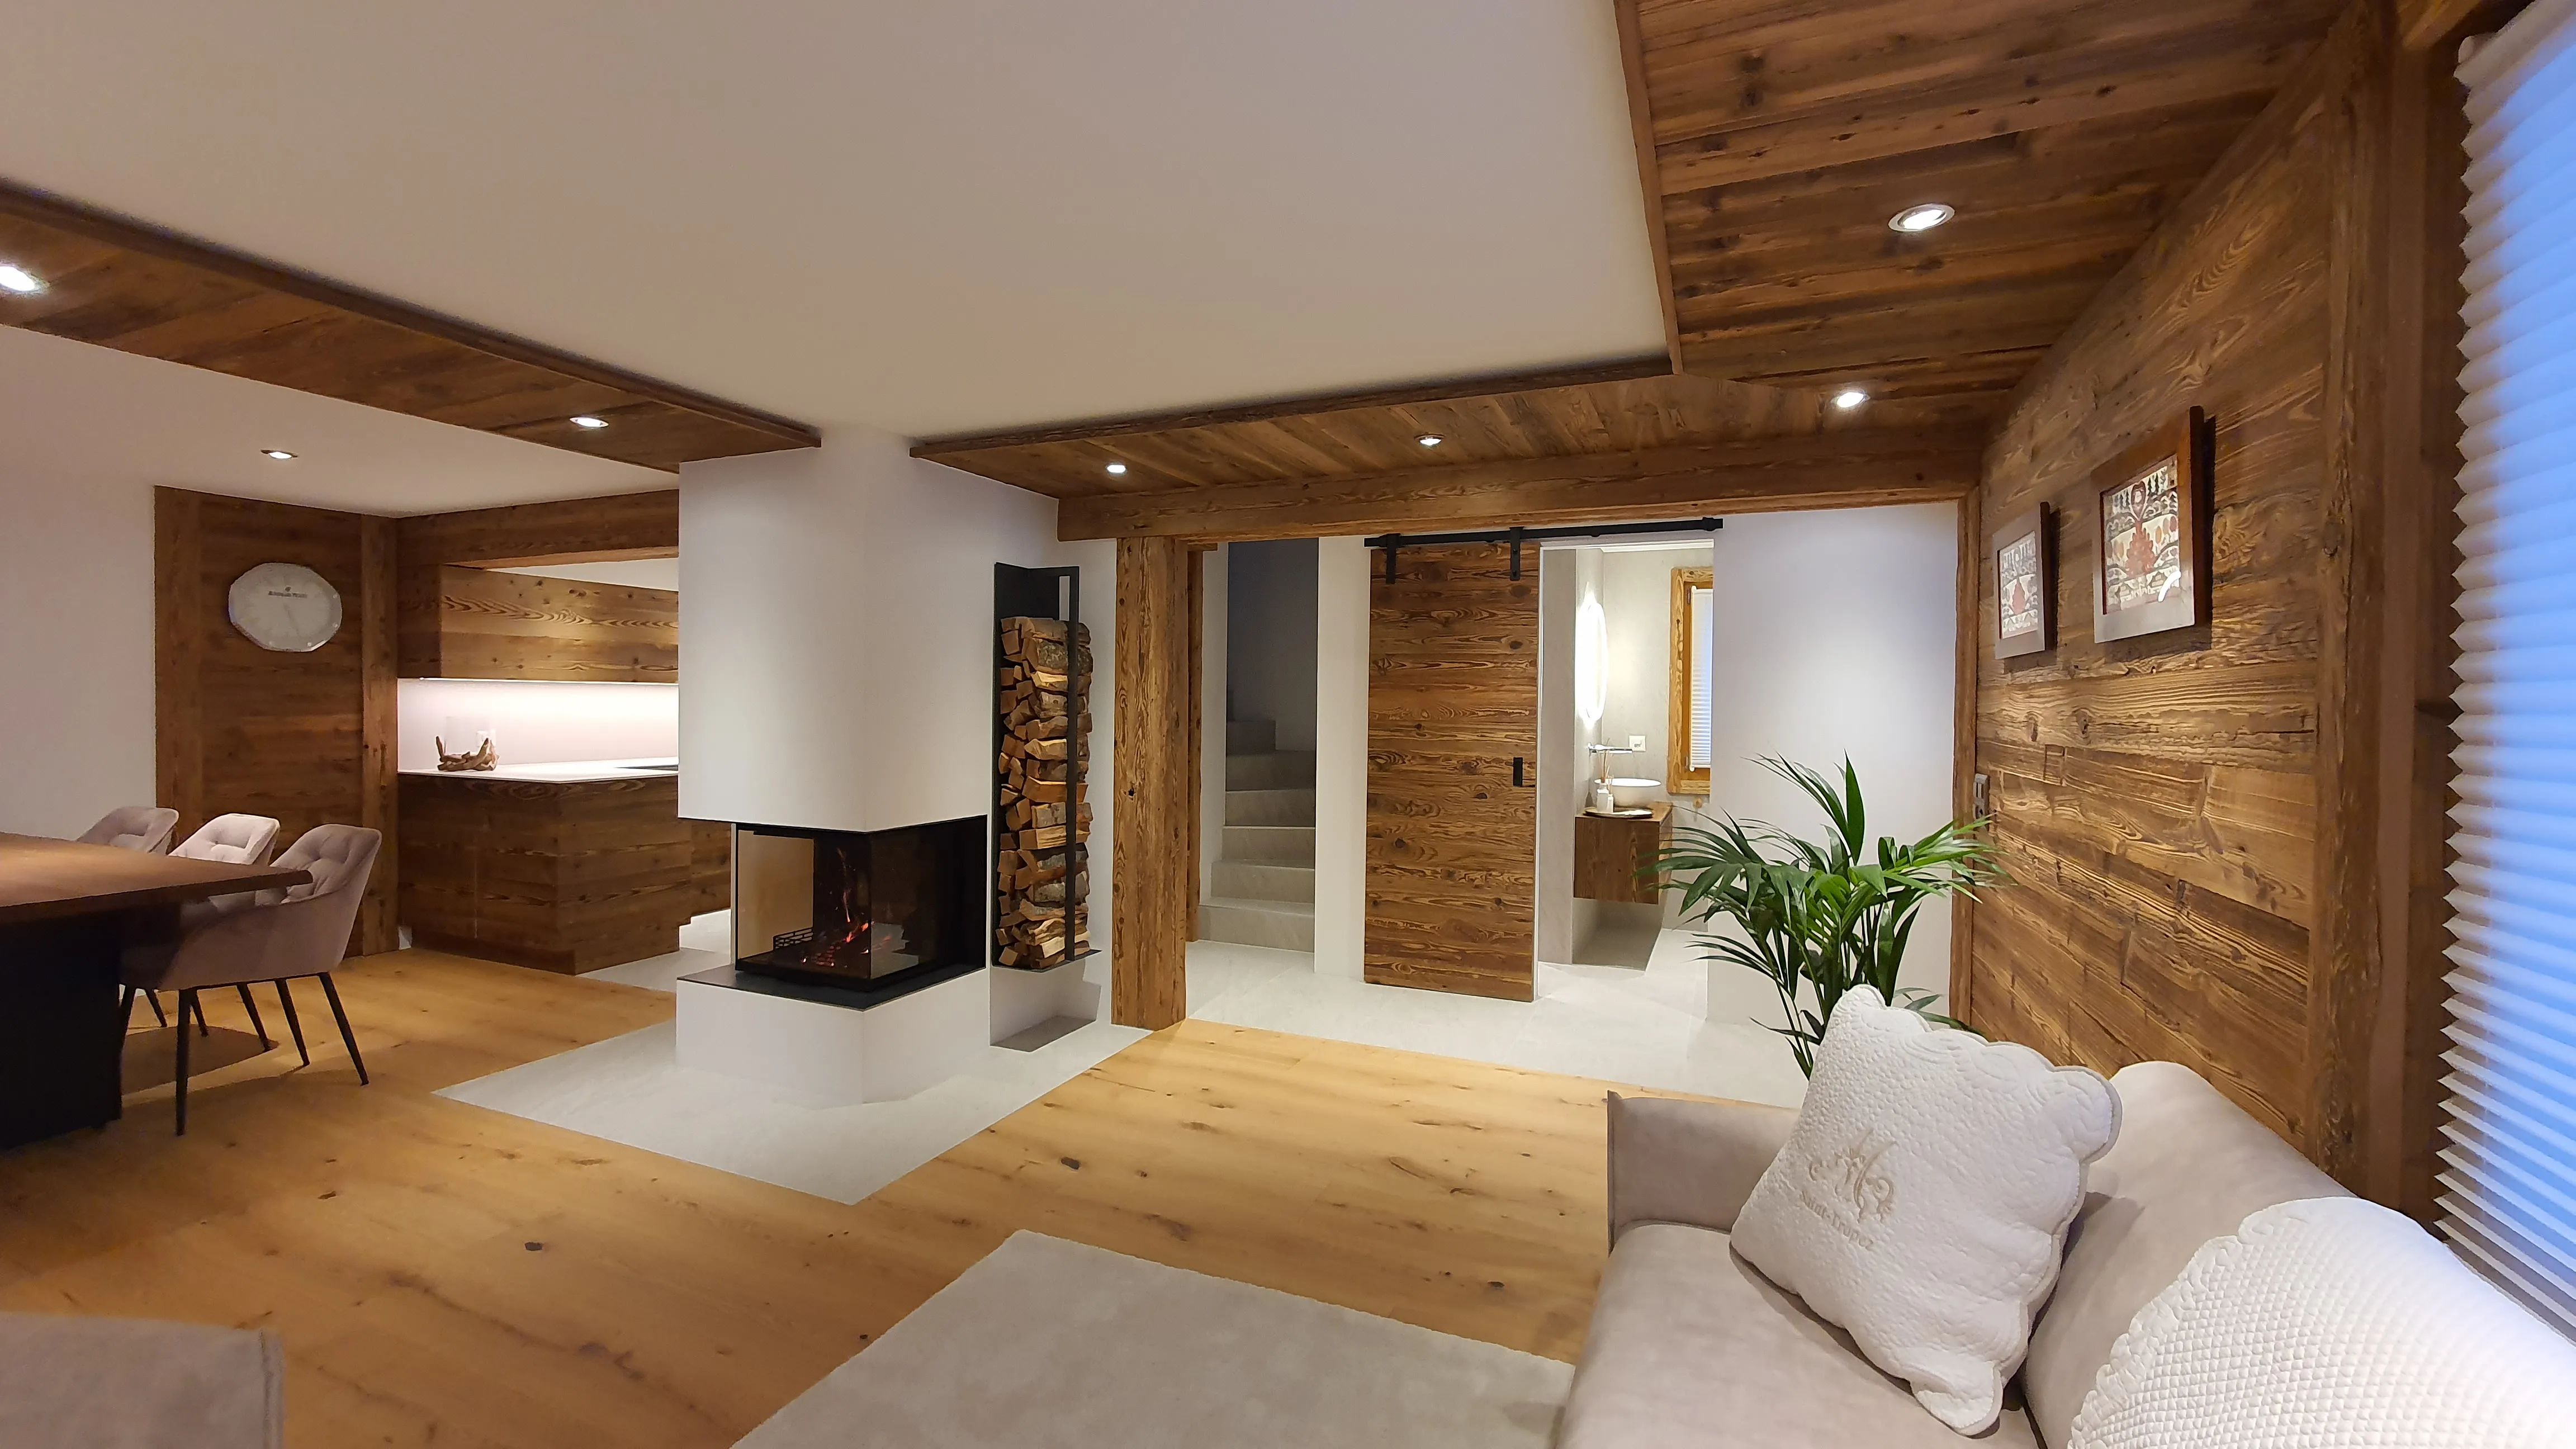 Wooddesign GmbH